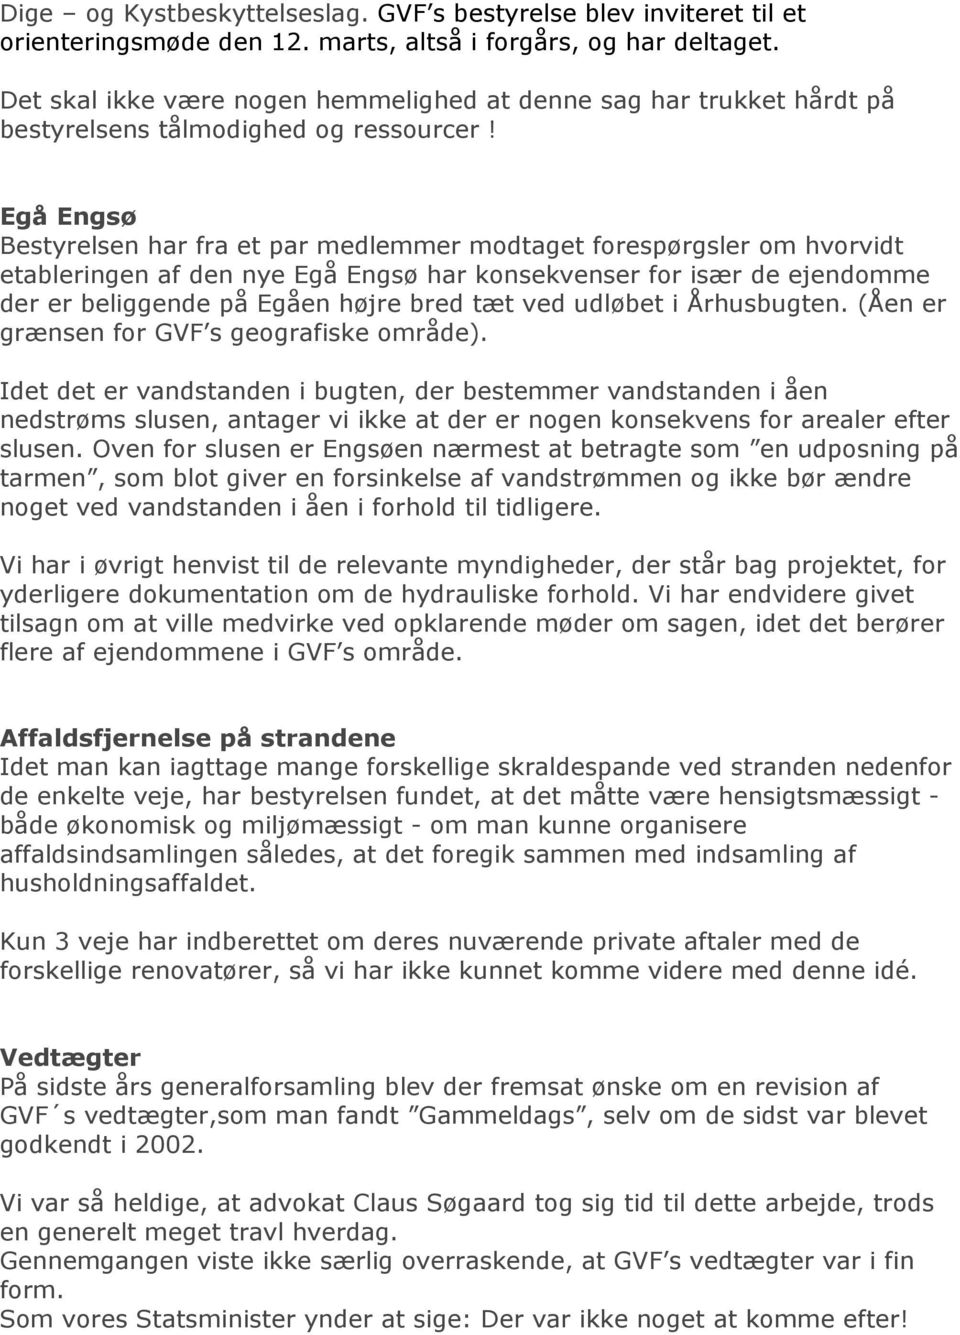 Egå Engsø Bestyrelsen har fra et par medlemmer modtaget forespørgsler om hvorvidt etableringen af den nye Egå Engsø har konsekvenser for især de ejendomme der er beliggende på Egåen højre bred tæt